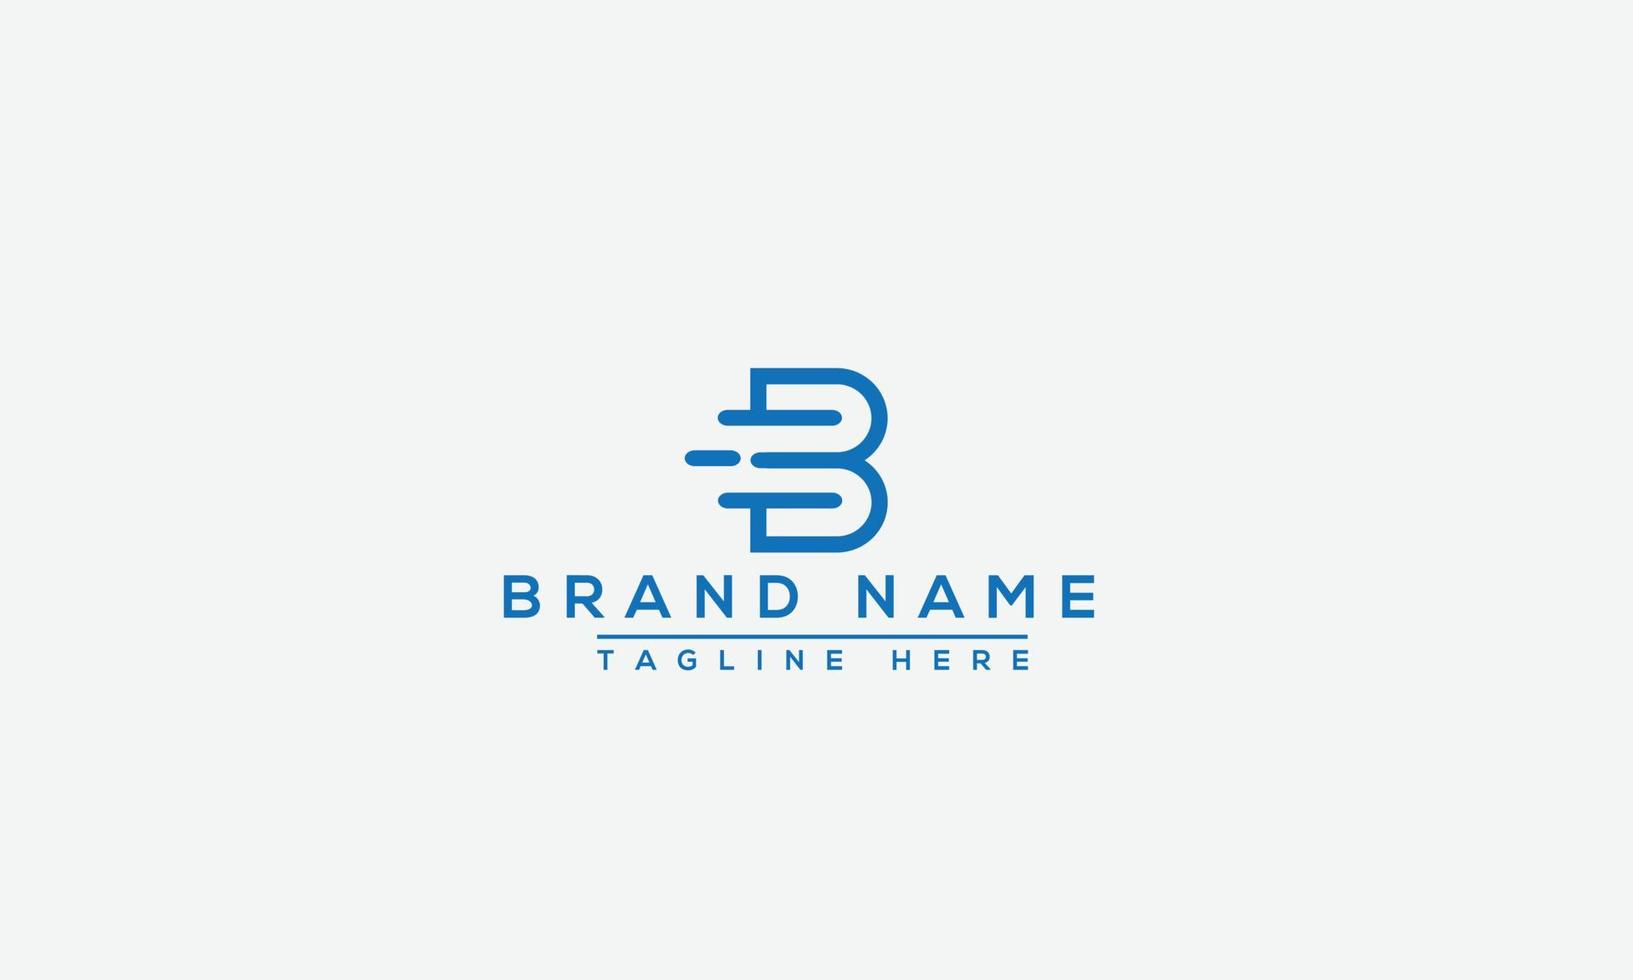 elemento de marca gráfico vectorial de plantilla de diseño de logotipo b. vector